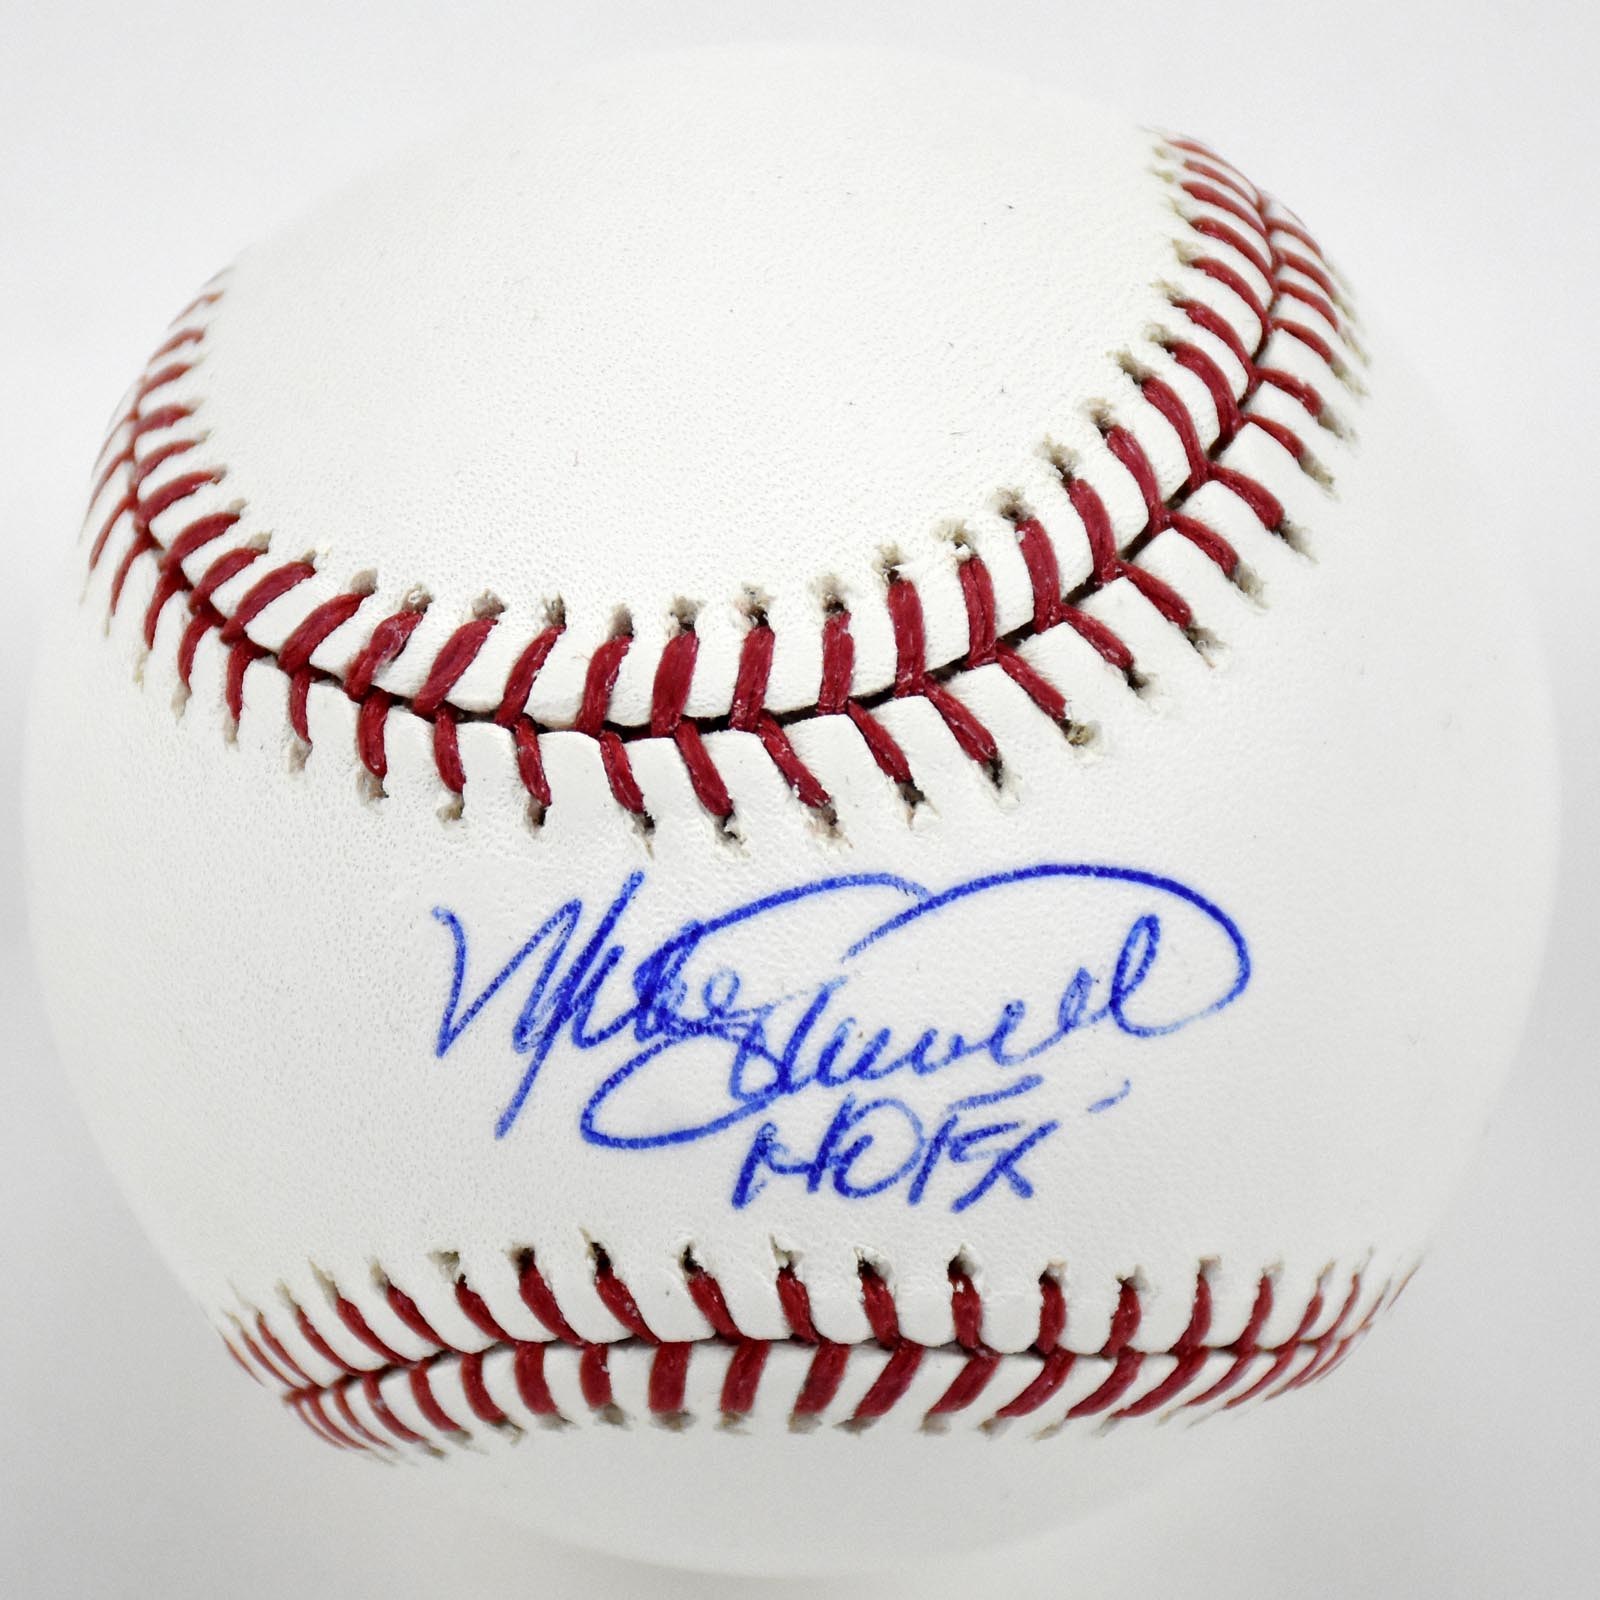 Mike Schmidt "HOF 95" Single Signed Baseball (PSA)